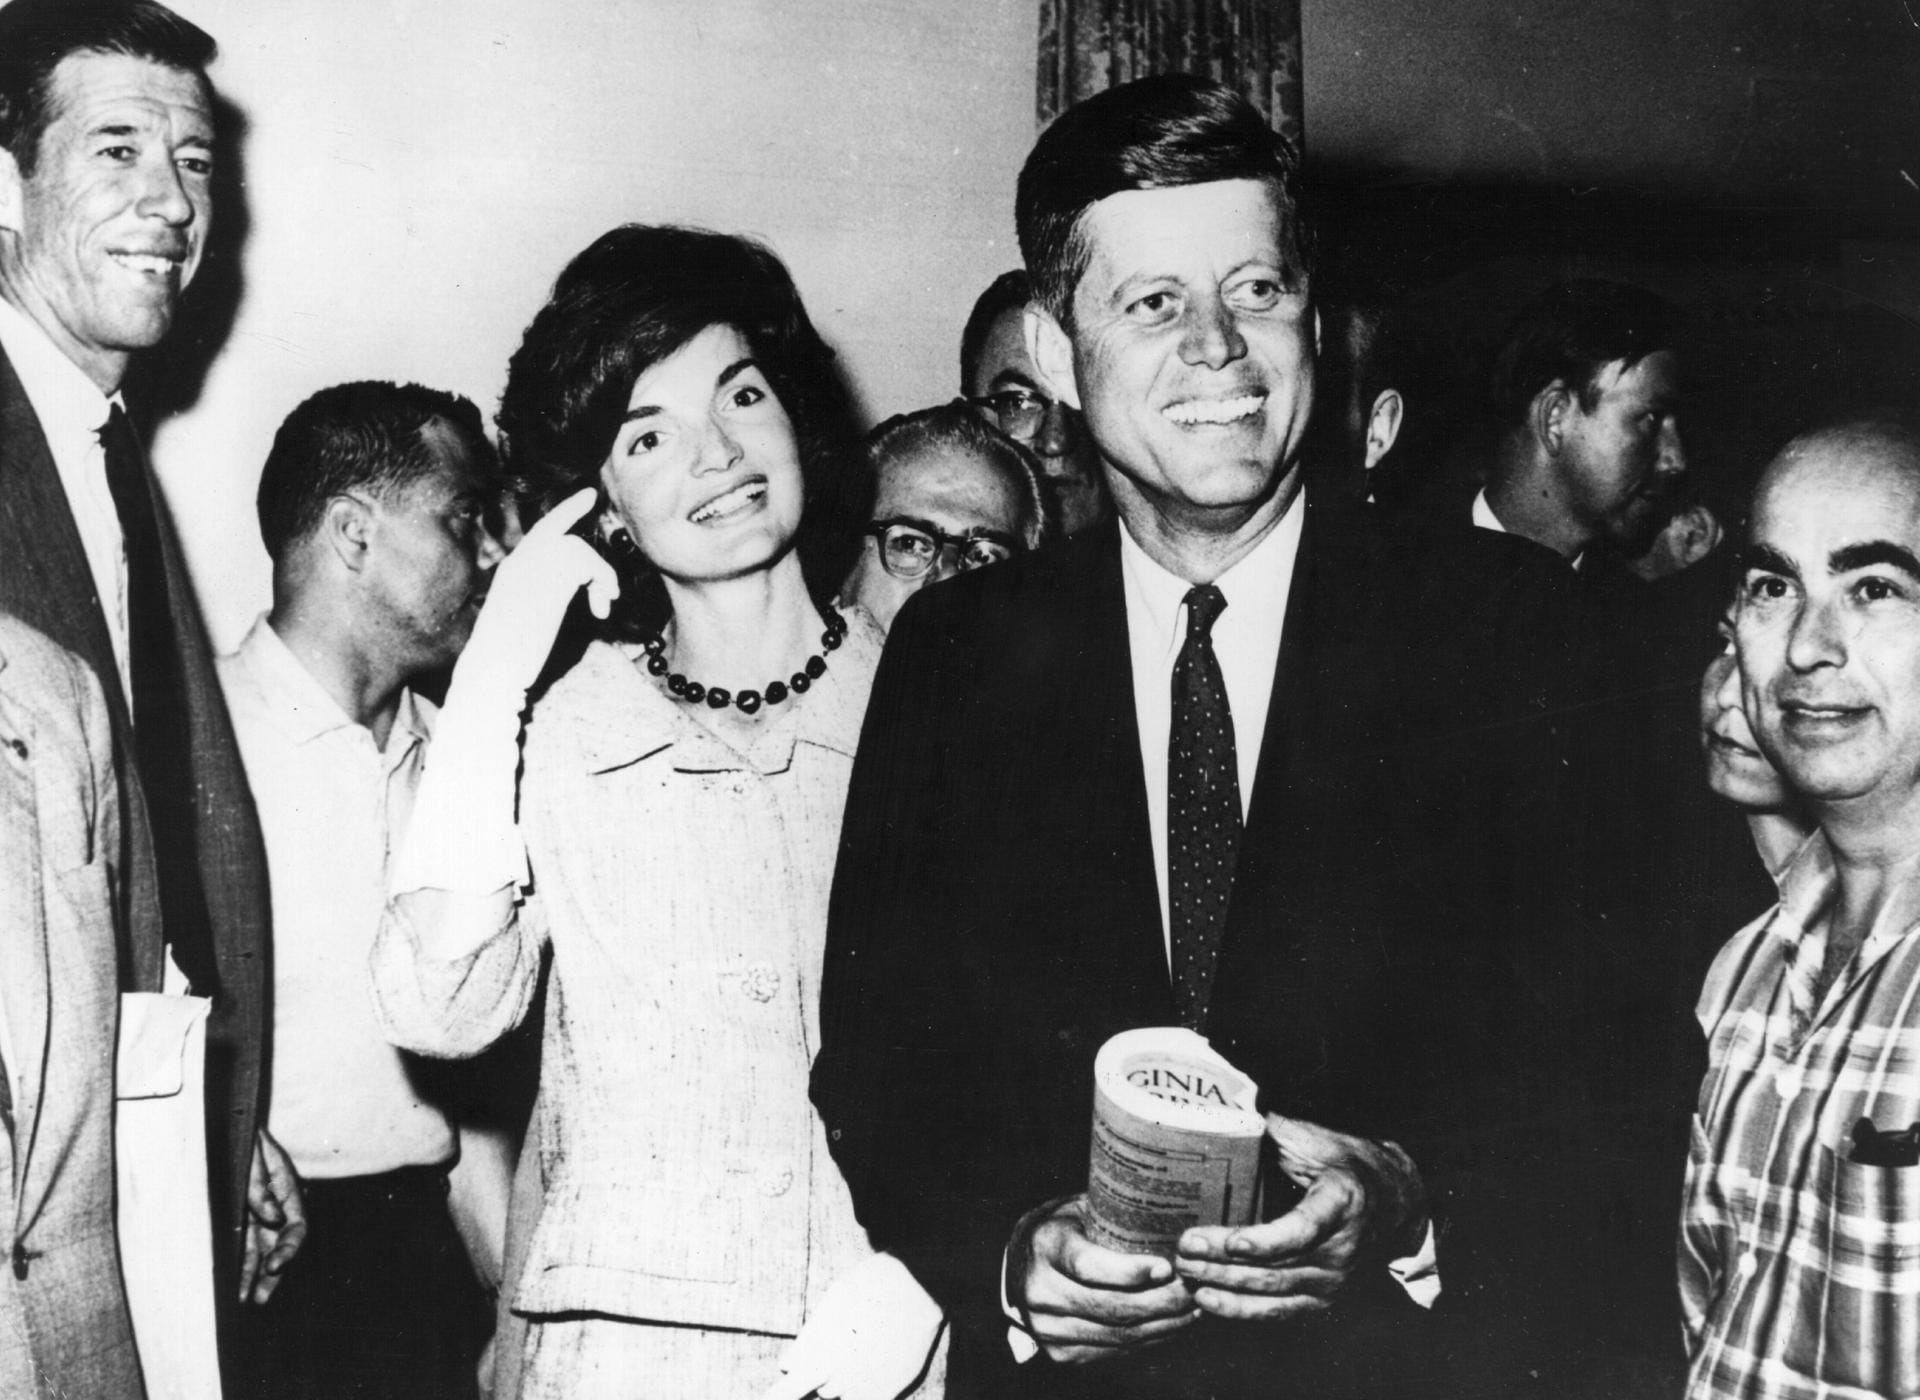 John F Kennedy mit seiner Frau Jackie: Kennedy soll im Laufe seiner Amtszeit zahlreiche Affären gehabt haben, unter anderem mit Marilyn Monroe. Ein großer Skandal entwickelte sich daraus nicht. Damals wurde darüber allerdings wenig berichtet – das Intimleben galt als privat. Der größte politische Skandal war wohl die Invasion in der Schweinebucht: Die CIA unterstützte kubanische Exilanten bei einer Invasion gegen die kommunistischen Revolutionäre. Der Angriff scheiterte.